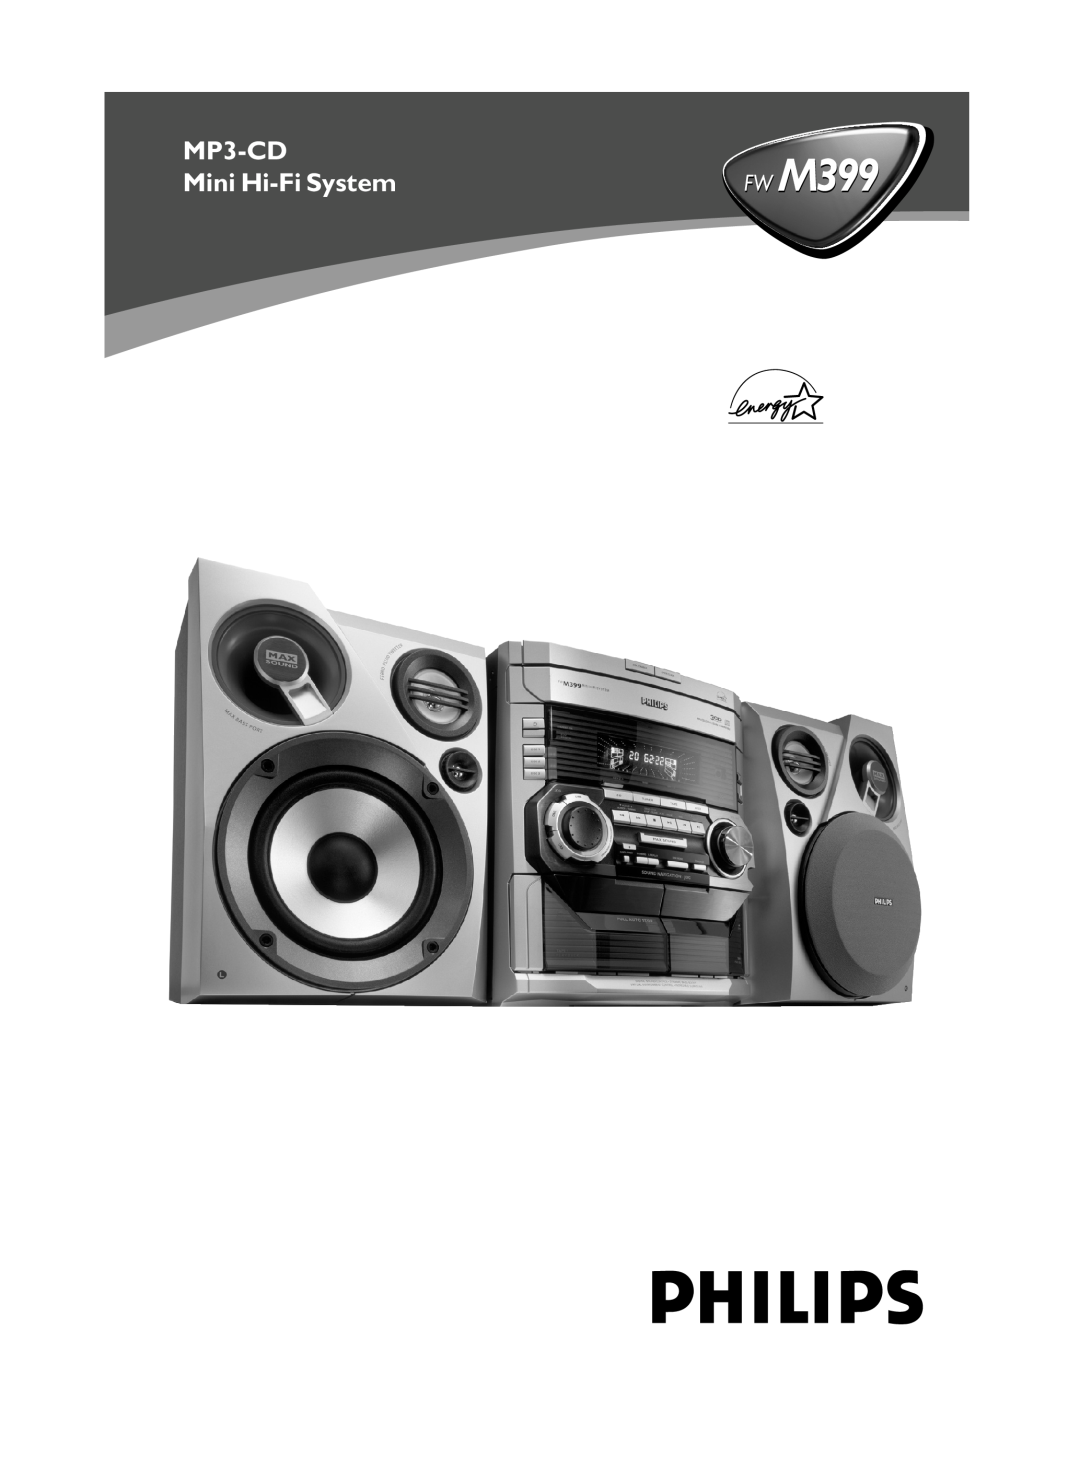 Philips FWM399 manual FW M399, MP3-CD, Mini Hi-FiSystem 